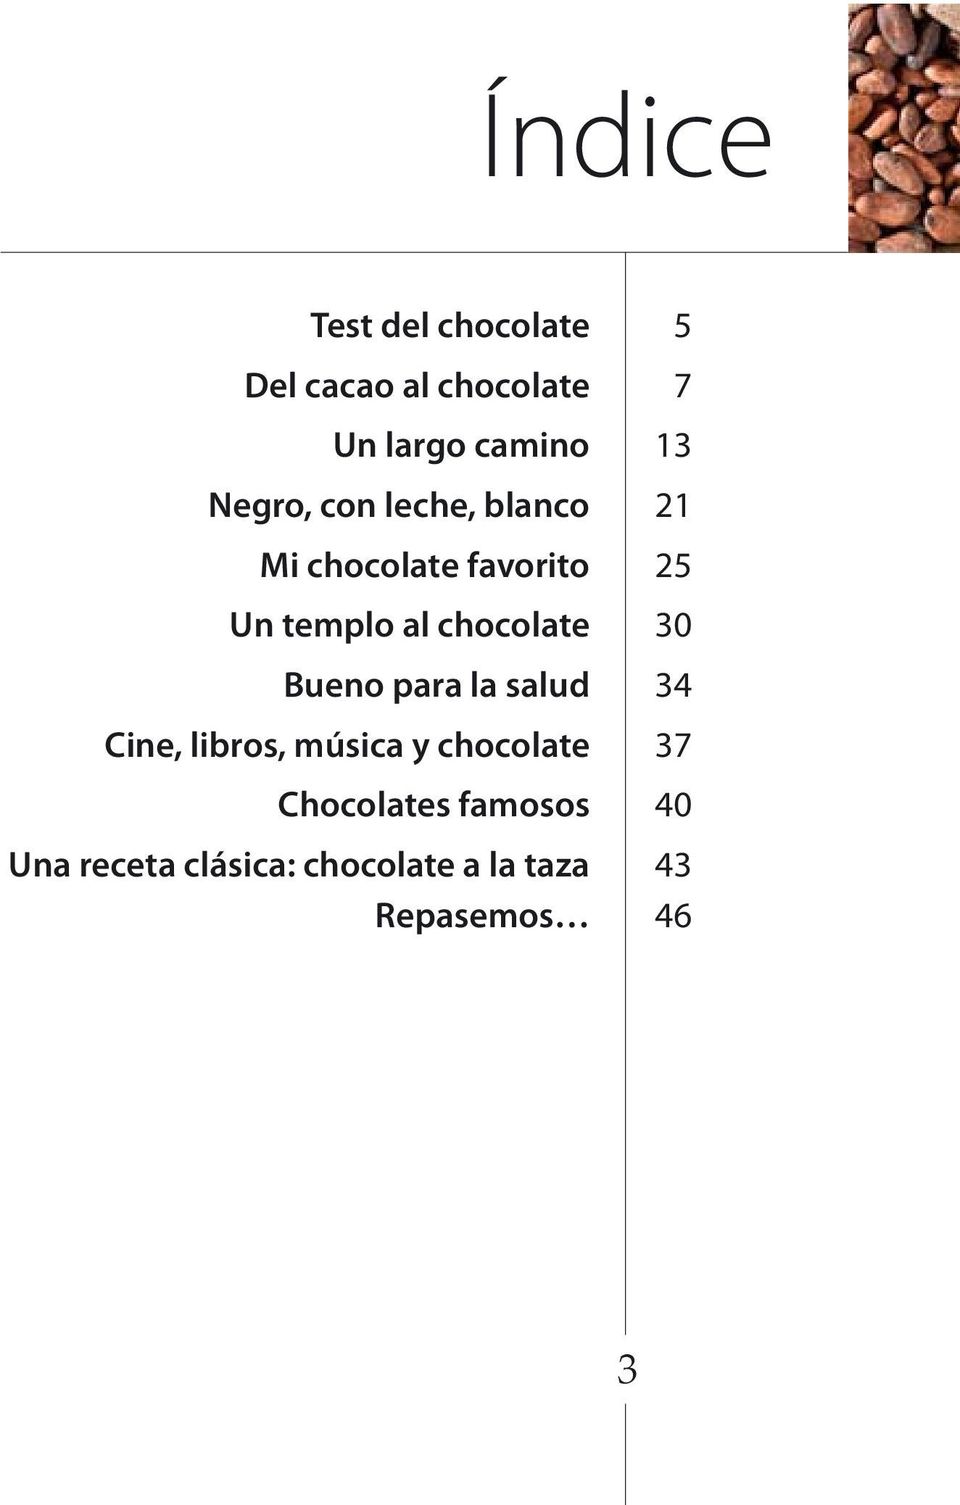 chocolate 30 Bueno para la salud 34 Cine, libros, música y chocolate 37